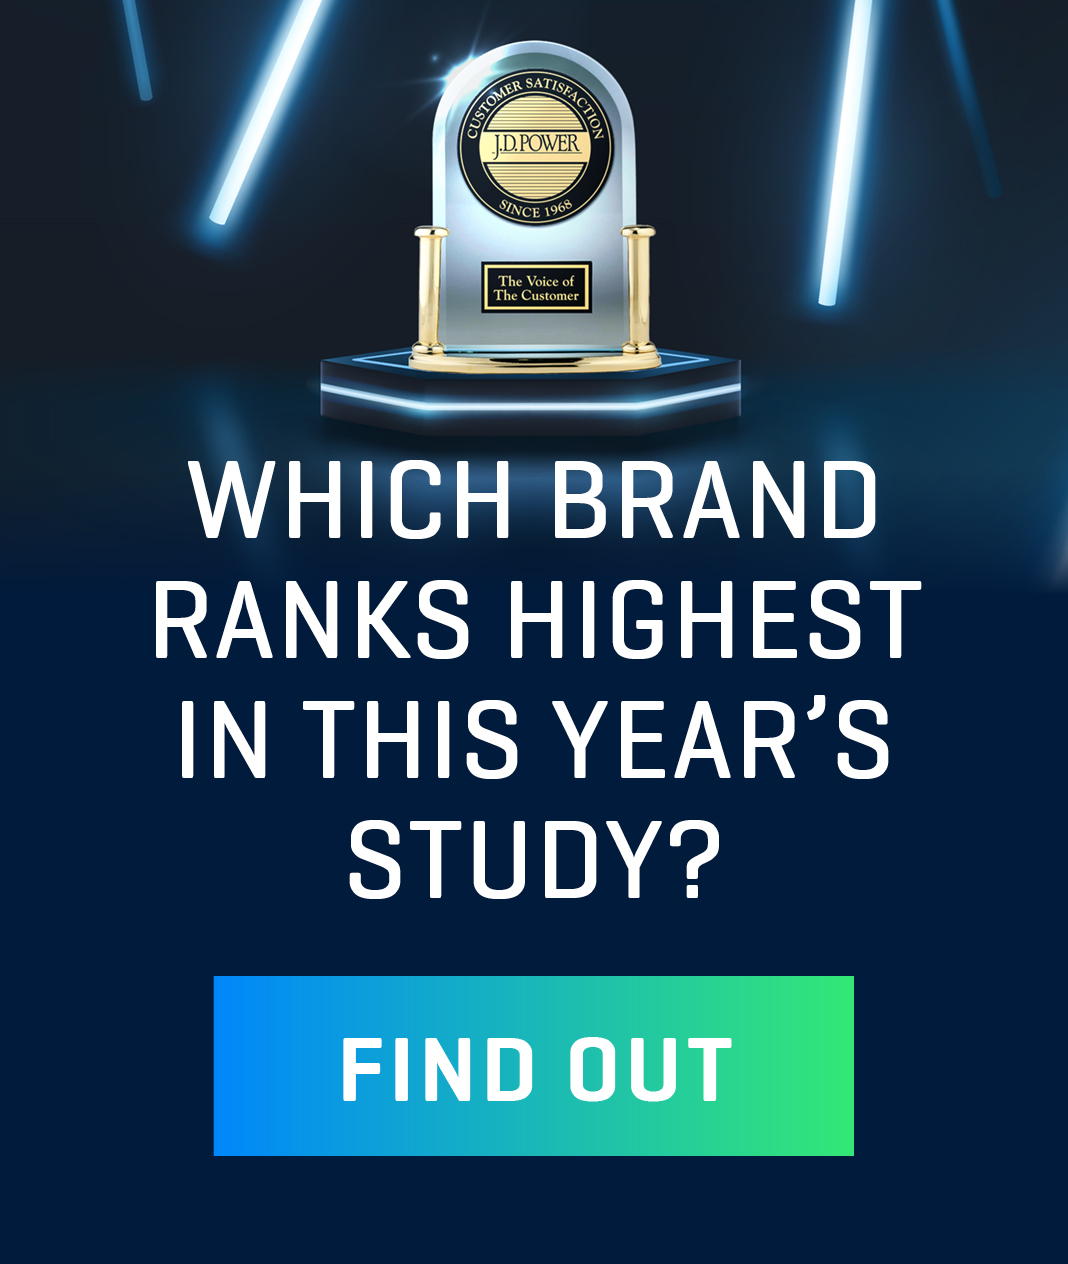 Which brand ranks highest